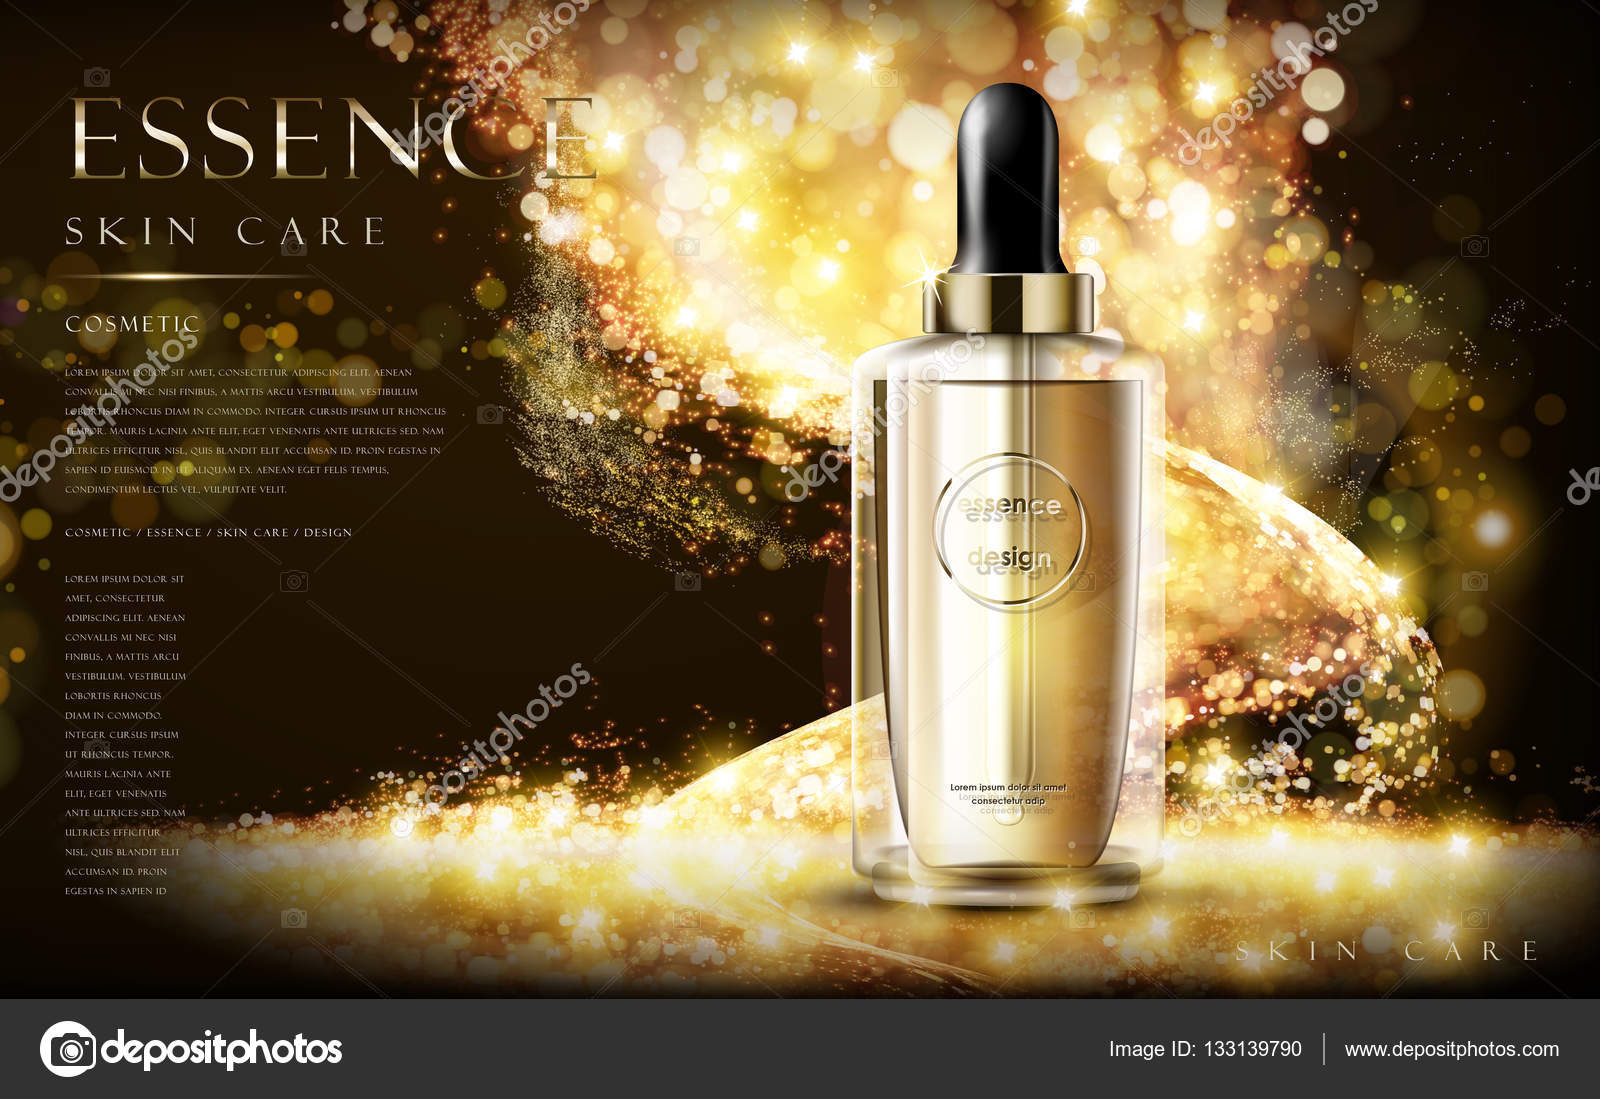 essence skin care ad \u2014 Stock Vector \u00a9 kchungtw #133139790